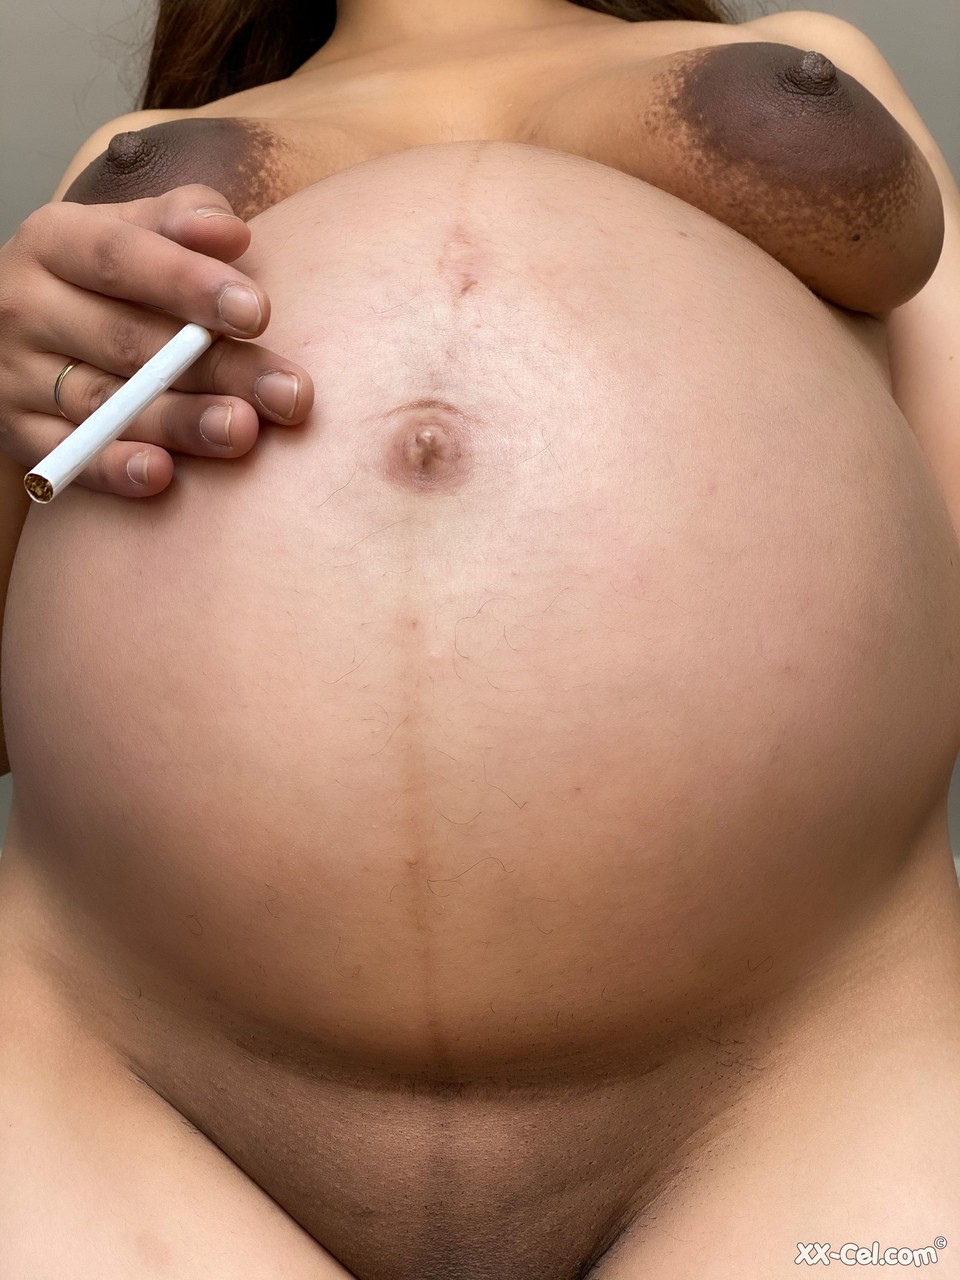 Pregnant smoker Leila teasing nude with her bulging tummy & her dark nipples foto porno #424132694 | XX Cel Pics, Leila, Pregnant, porno mobile